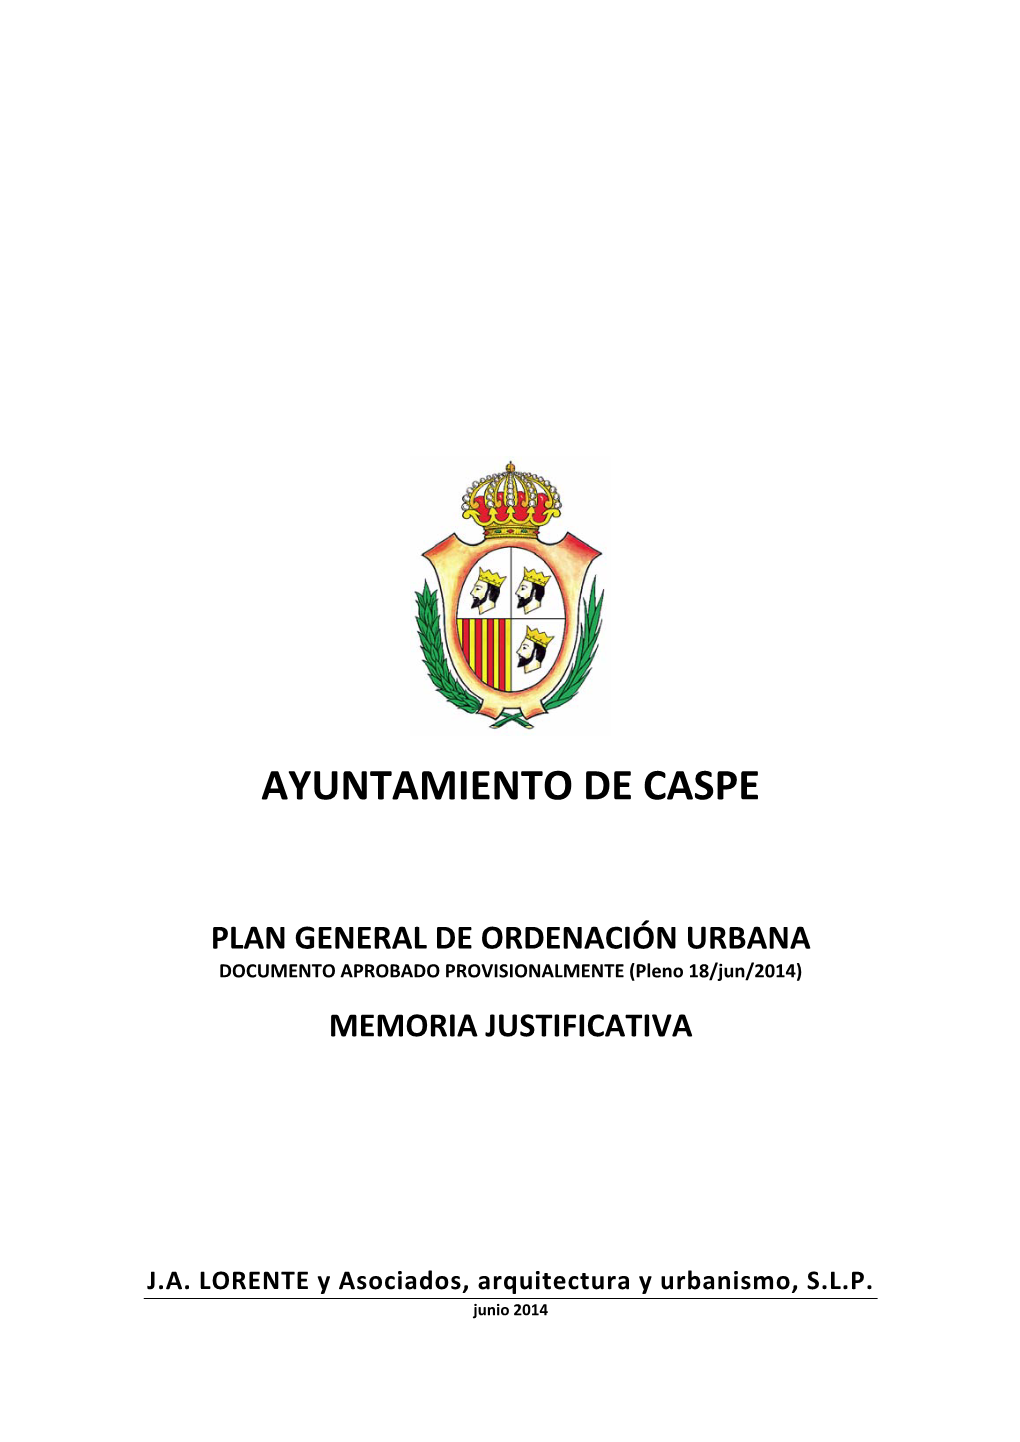 PLAN GENERAL DE ORDENACIÓN URBANA DOCUMENTO APROBADO PROVISIONALMENTE (Pleno 18/Jun/2014)